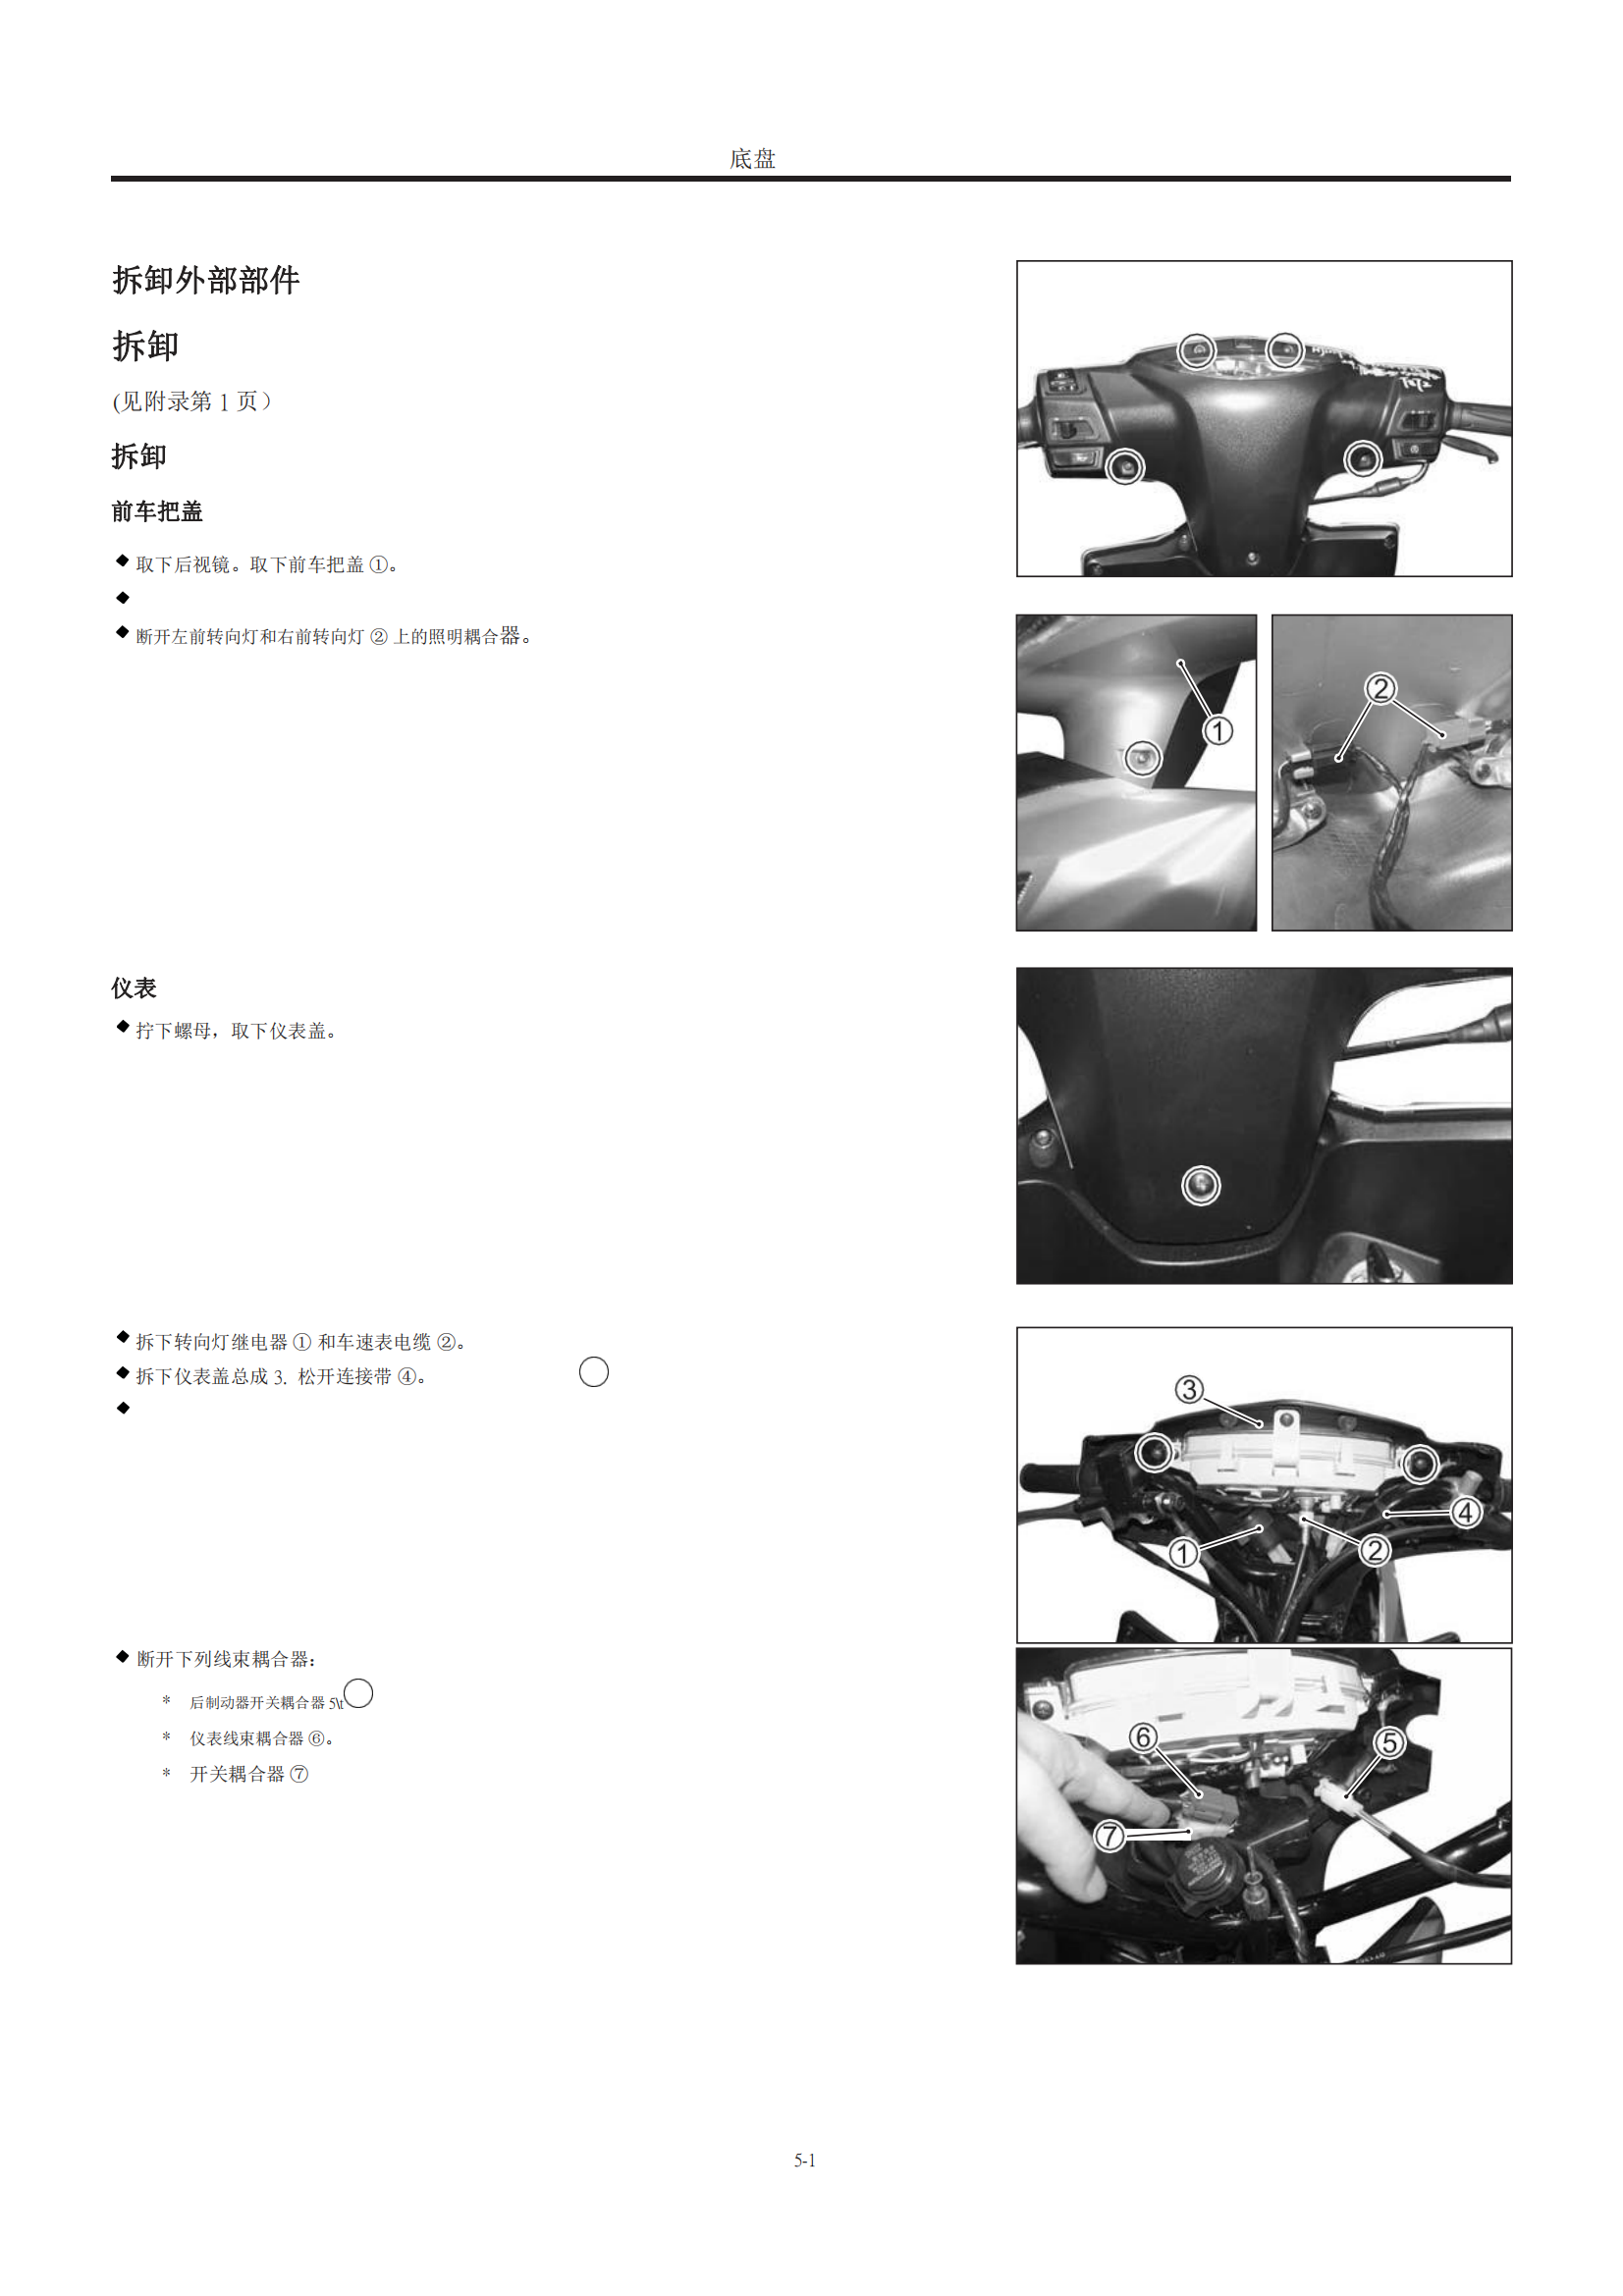 简体中文2013年豪爵灵迪维修手册HJ125T-18 HT125T-18A维修手册插图4